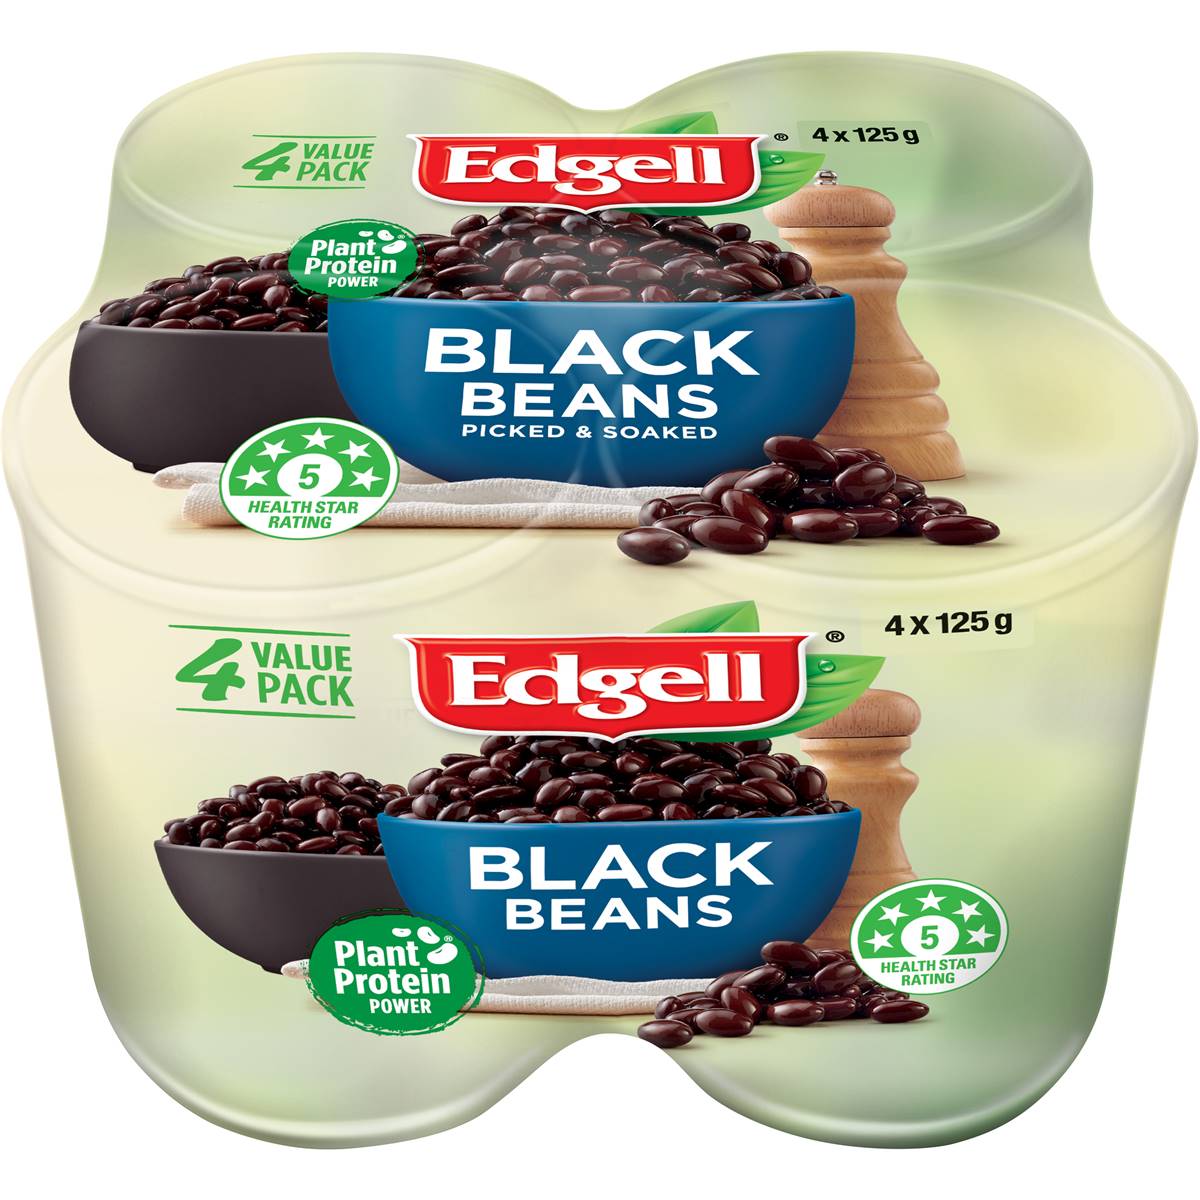 Edgell's Black Bean Multipack 4 x 125g